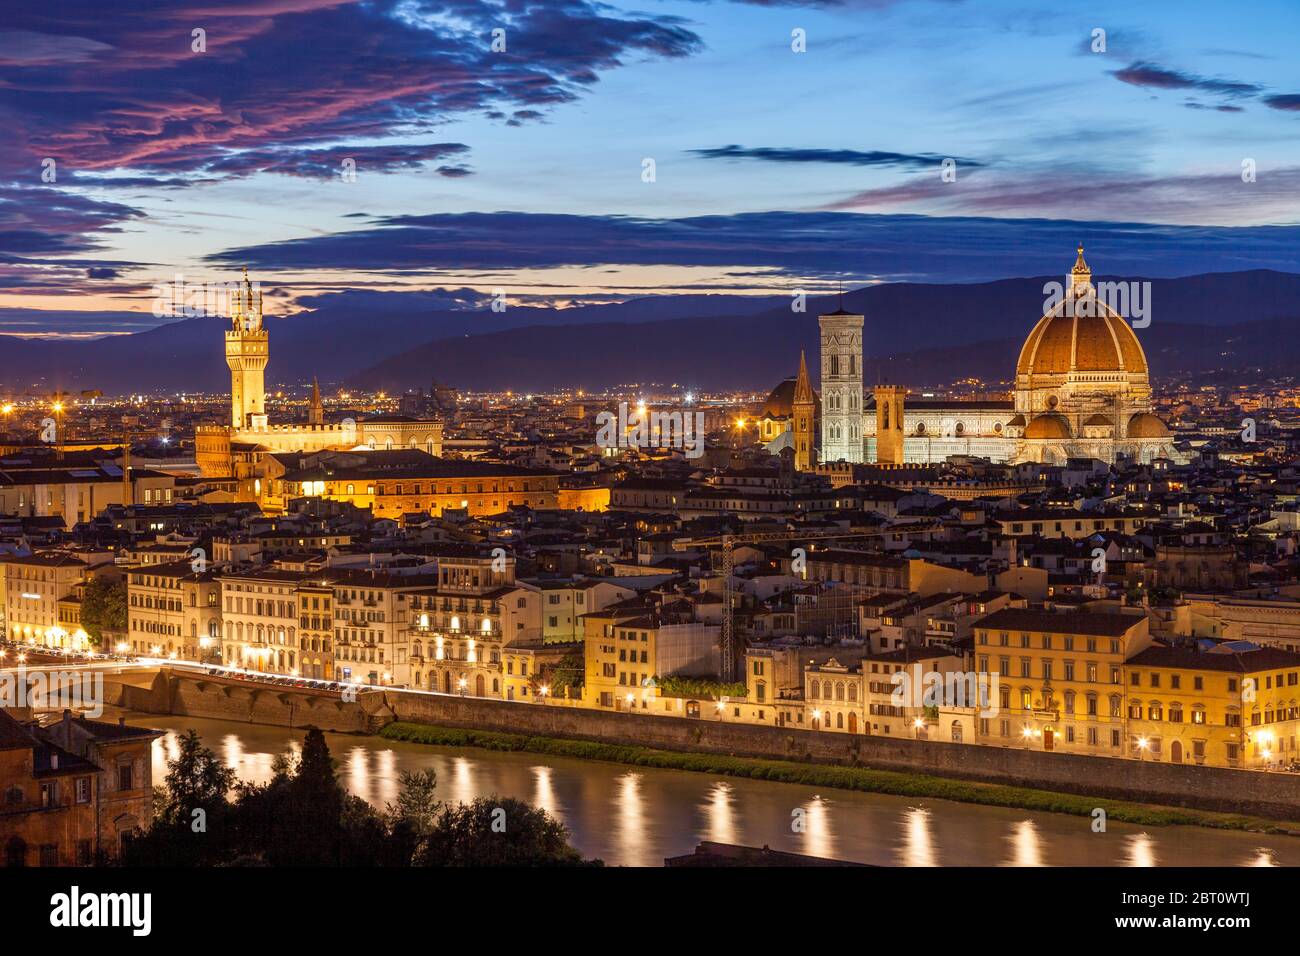 Die Türme des Palazzo Vecchio und des Duomo di Firenze stehen hoch über der Renaissance-Stadt Florenz, Toskana, Italien Stockfoto